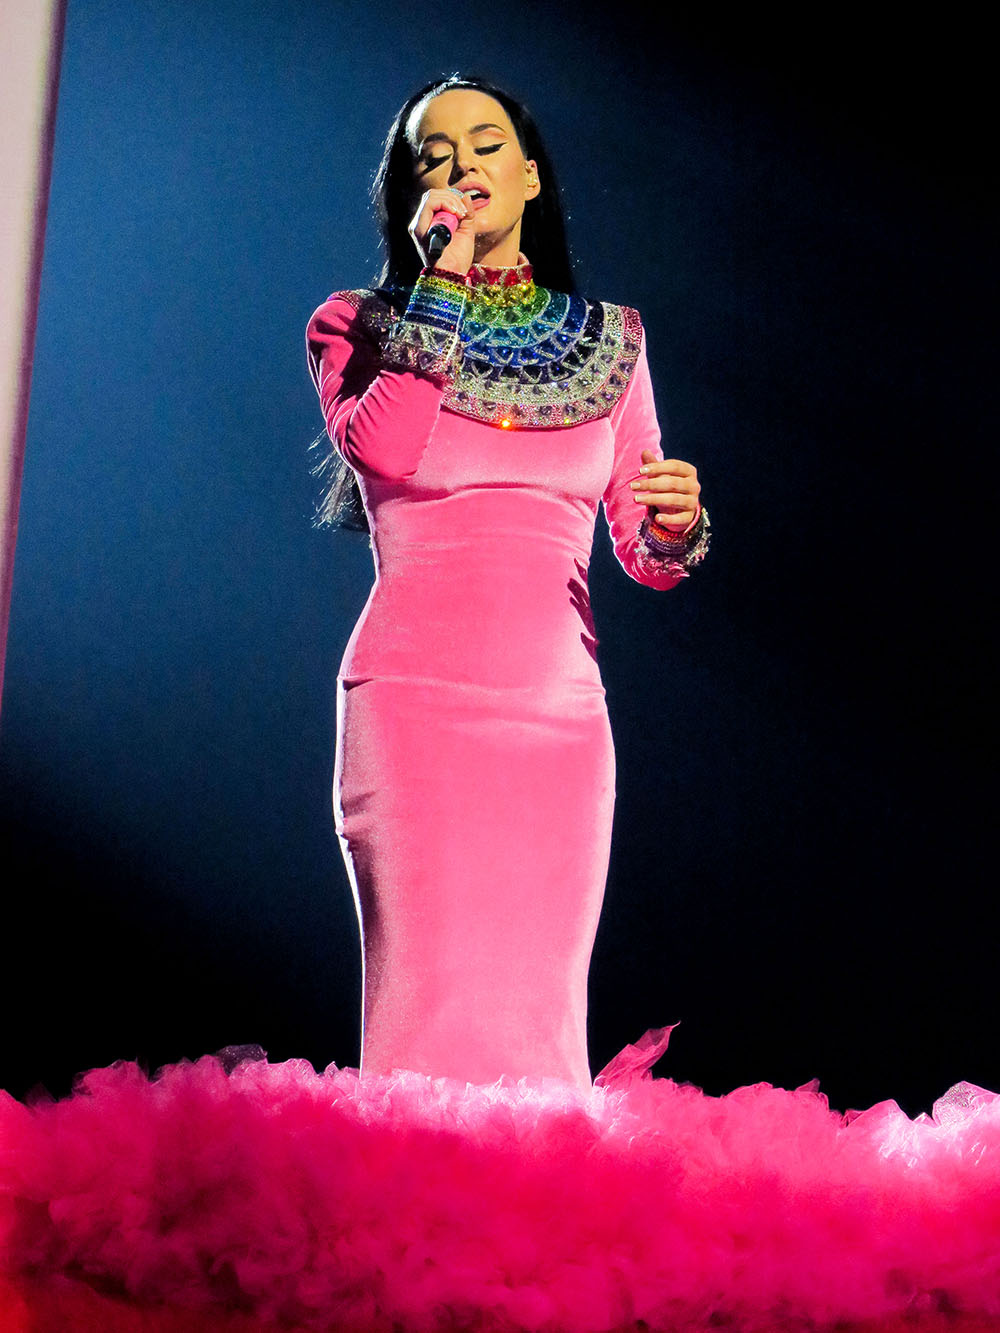 Katy Perry: PLAY Las Vegas 